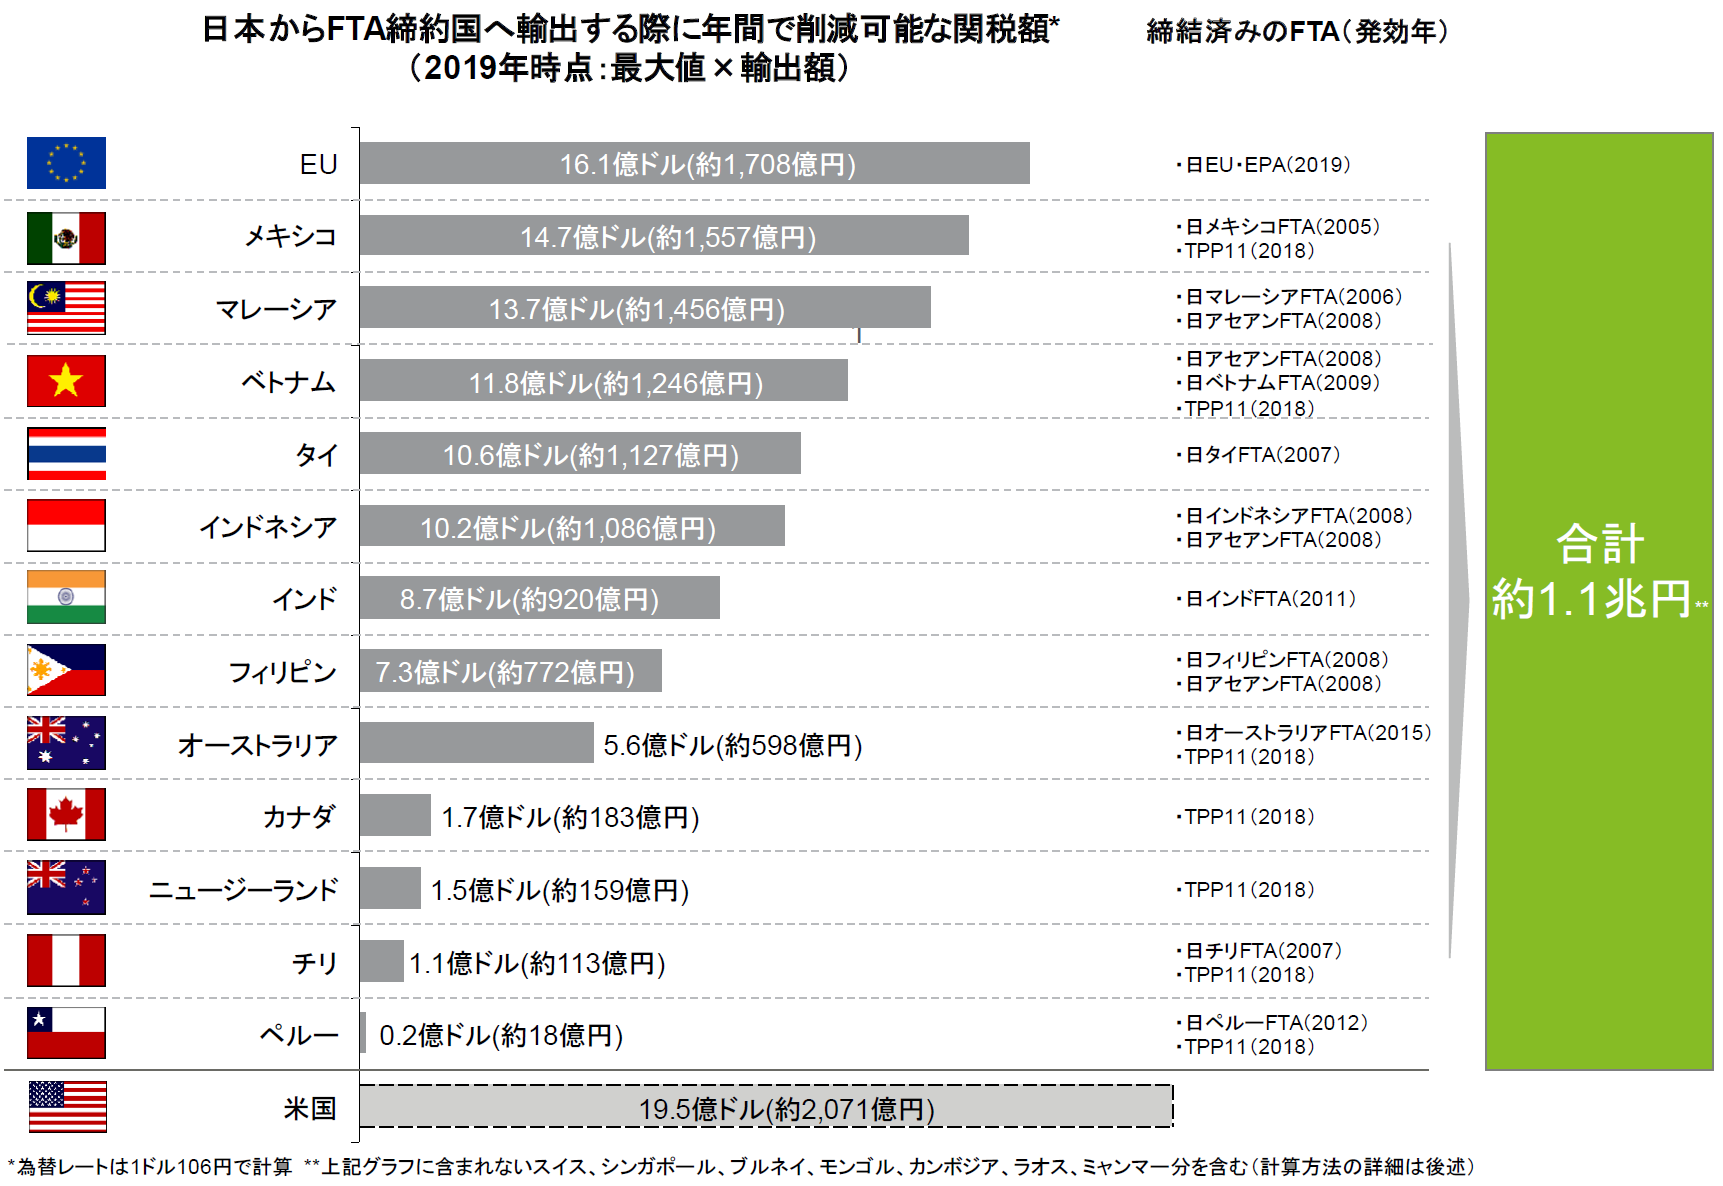 日本からFTA締約国へ輸出する際に年間で削減可能な関税額